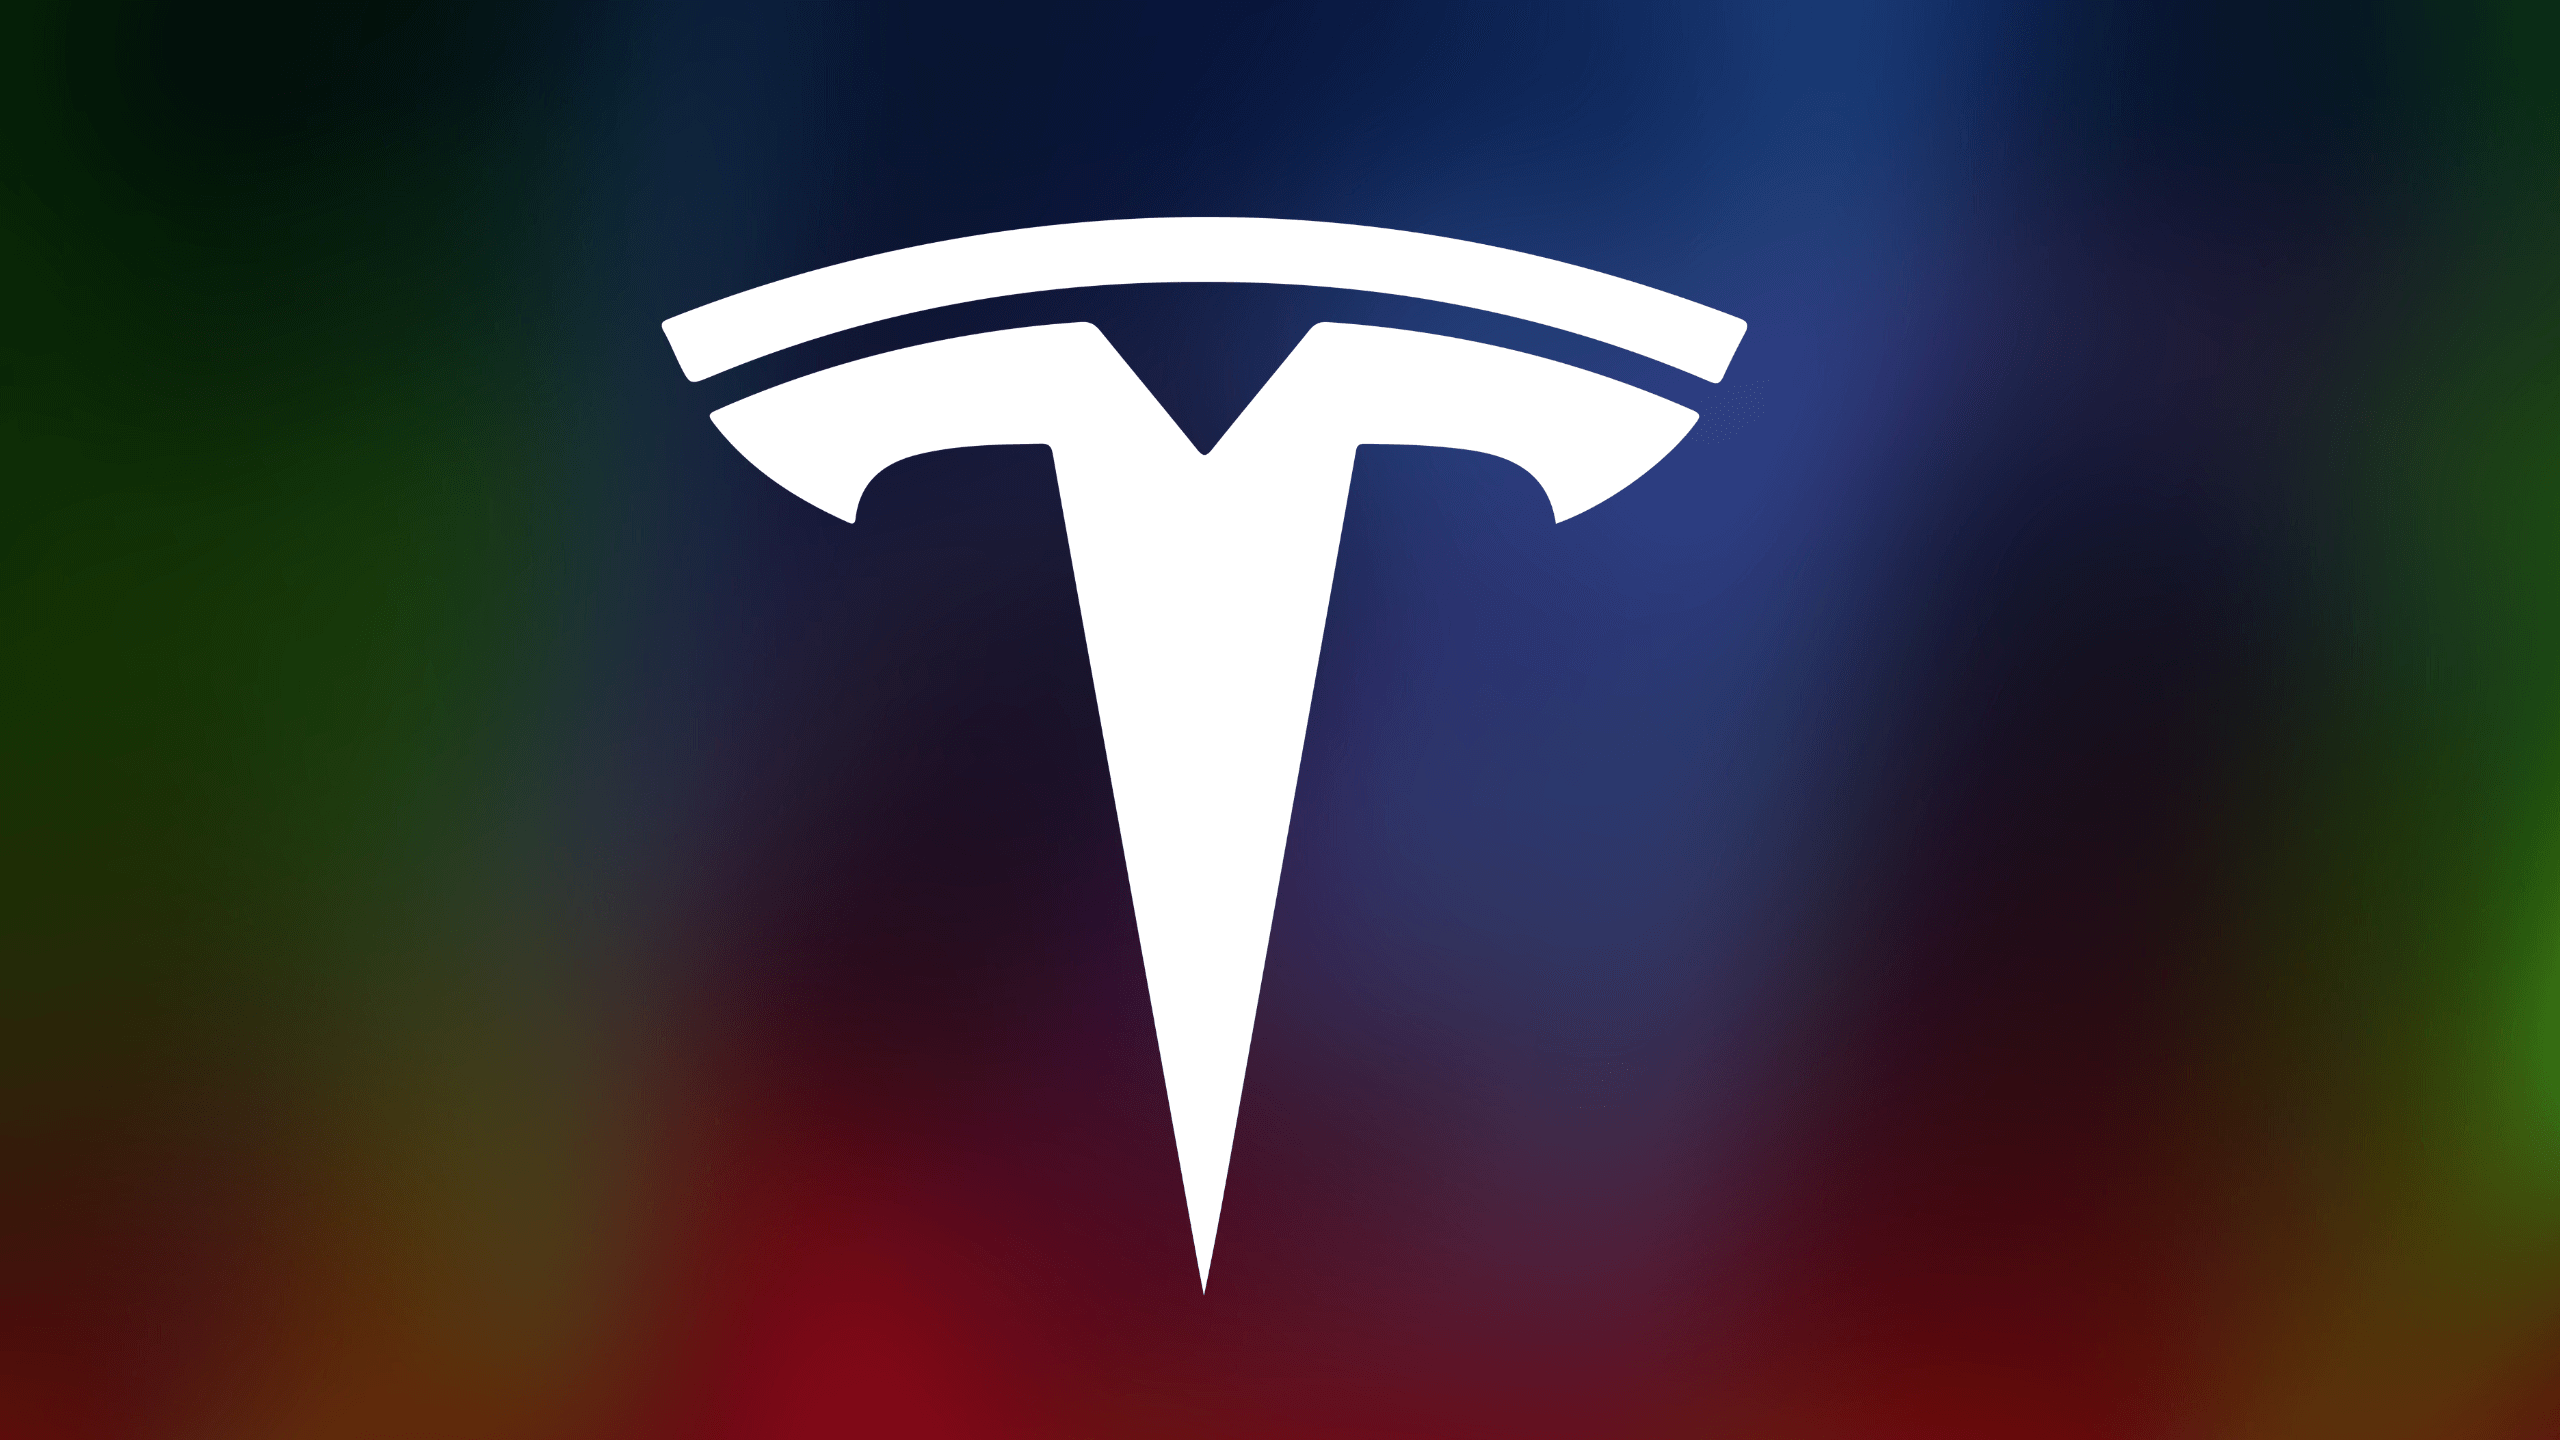 Les actions de Tesla envisagent un retournement possible alors que les investisseurs deviennent optimistes